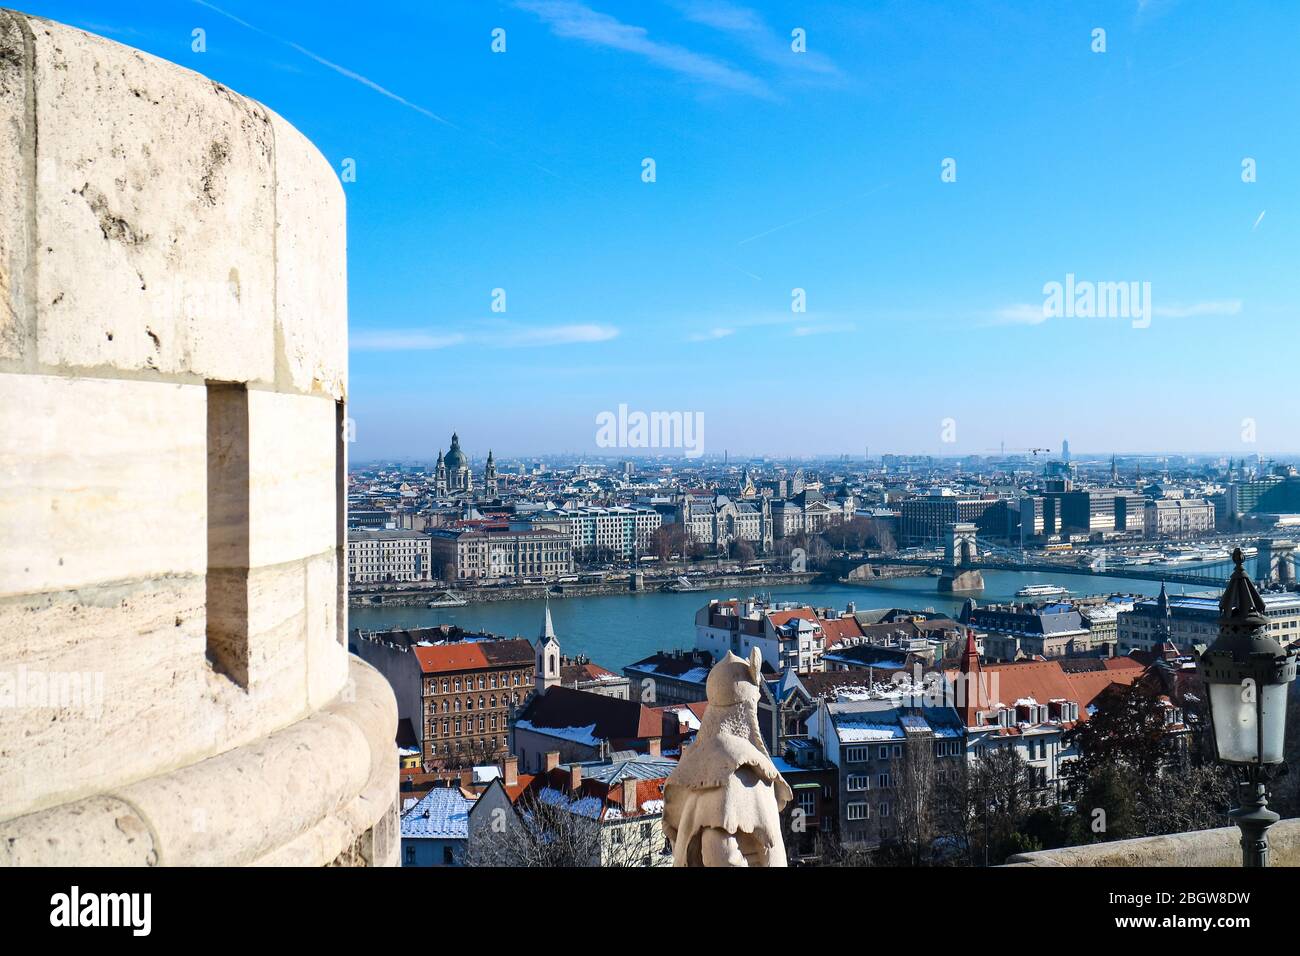 Luftaufnahme des Zentrums von Budapest, Ungarn, mit Donau, St.-Stephans-Basilika und der berühmten Kettenbrücke von der Fischerbastei aus gesehen. Stockfoto